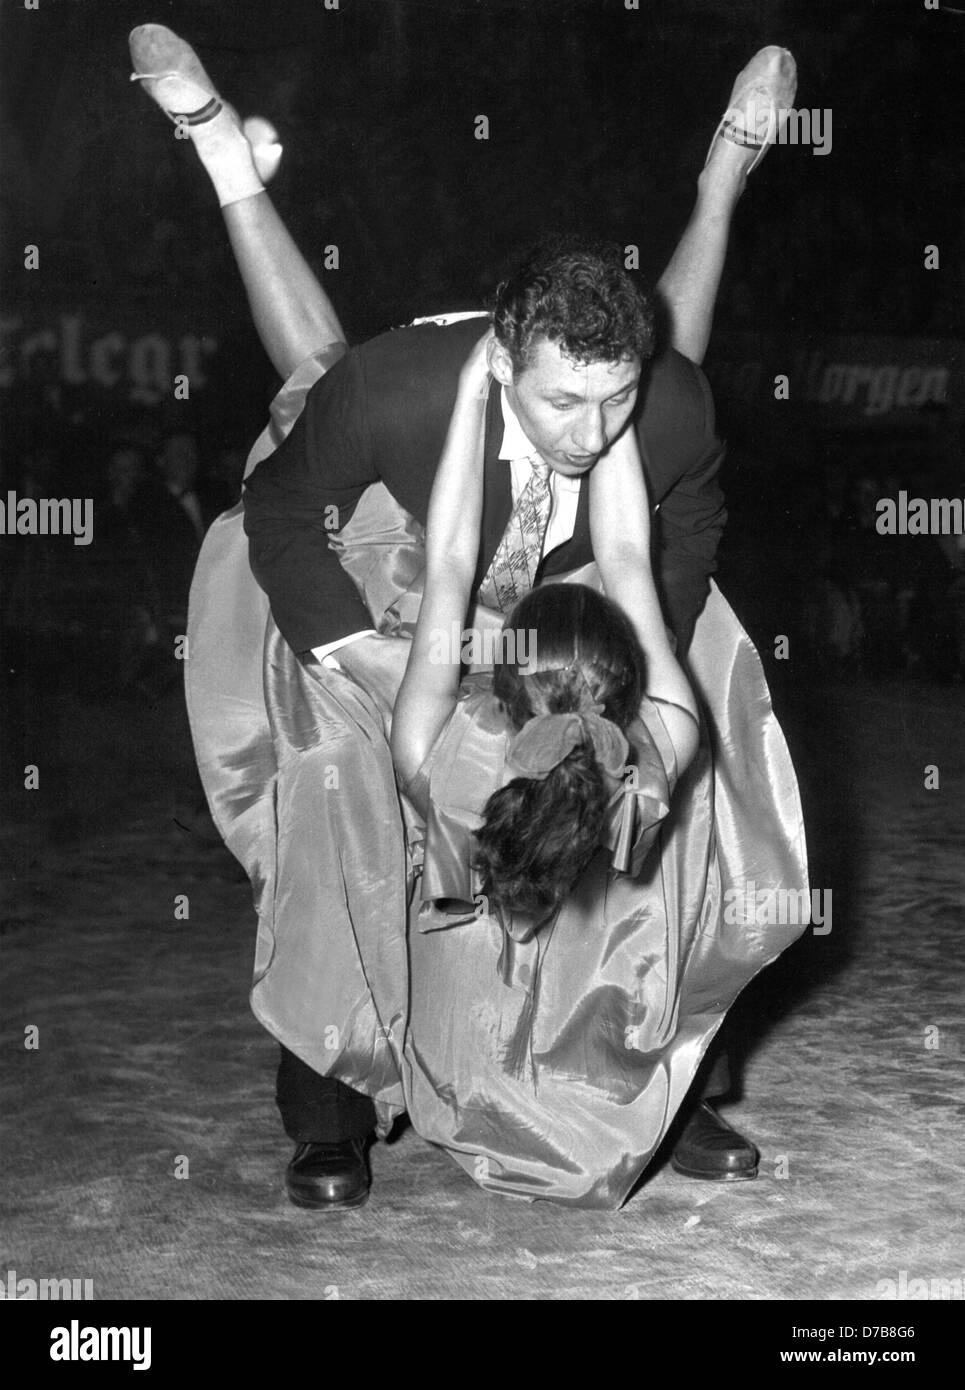 L'un des couples gagnant en action le 14 décembre en 1952. Fans de jazz vu les championnats du monde de danse Jitterbug Boogie-Woogie le 14 décembre en 1952. Banque D'Images